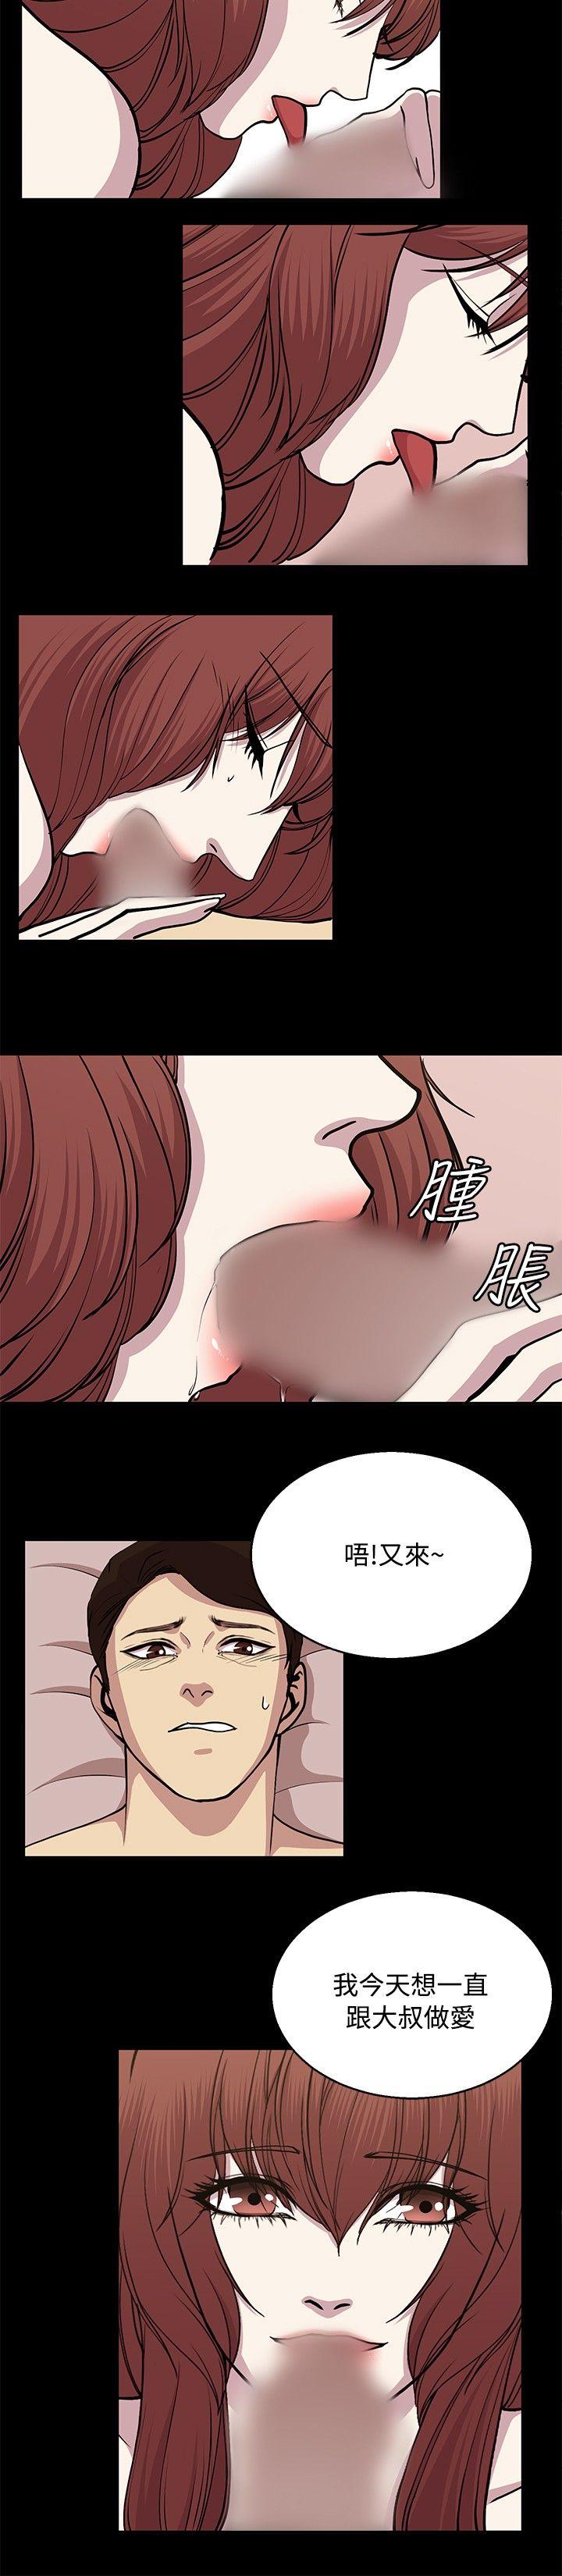 韩国污漫画 贊助者 第24话 10